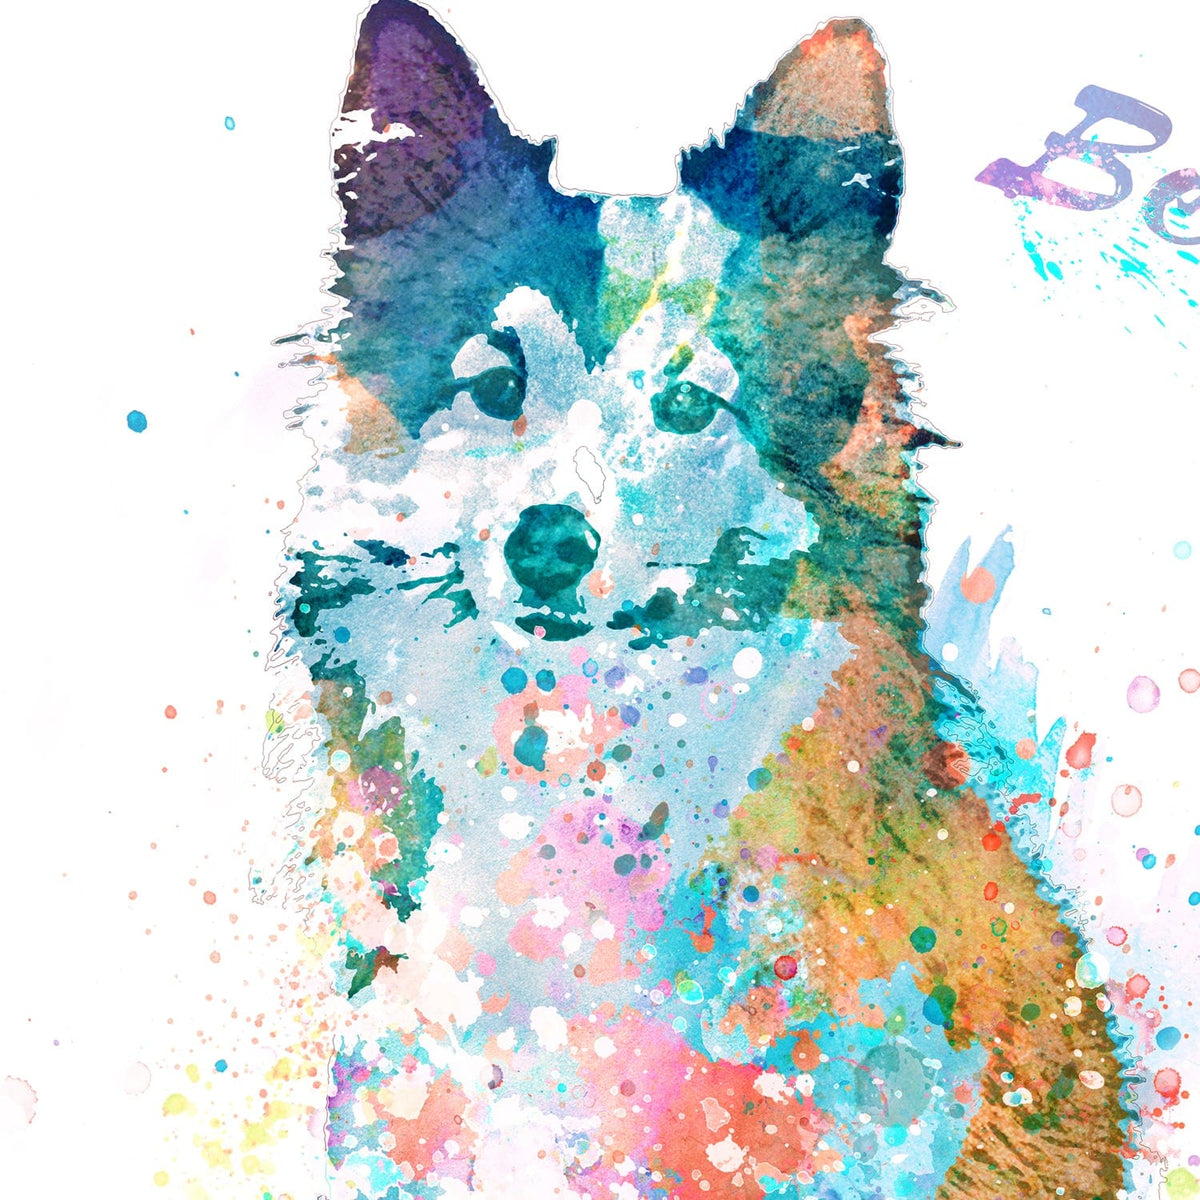 watercolor pet dog portrait detail - Sheltie